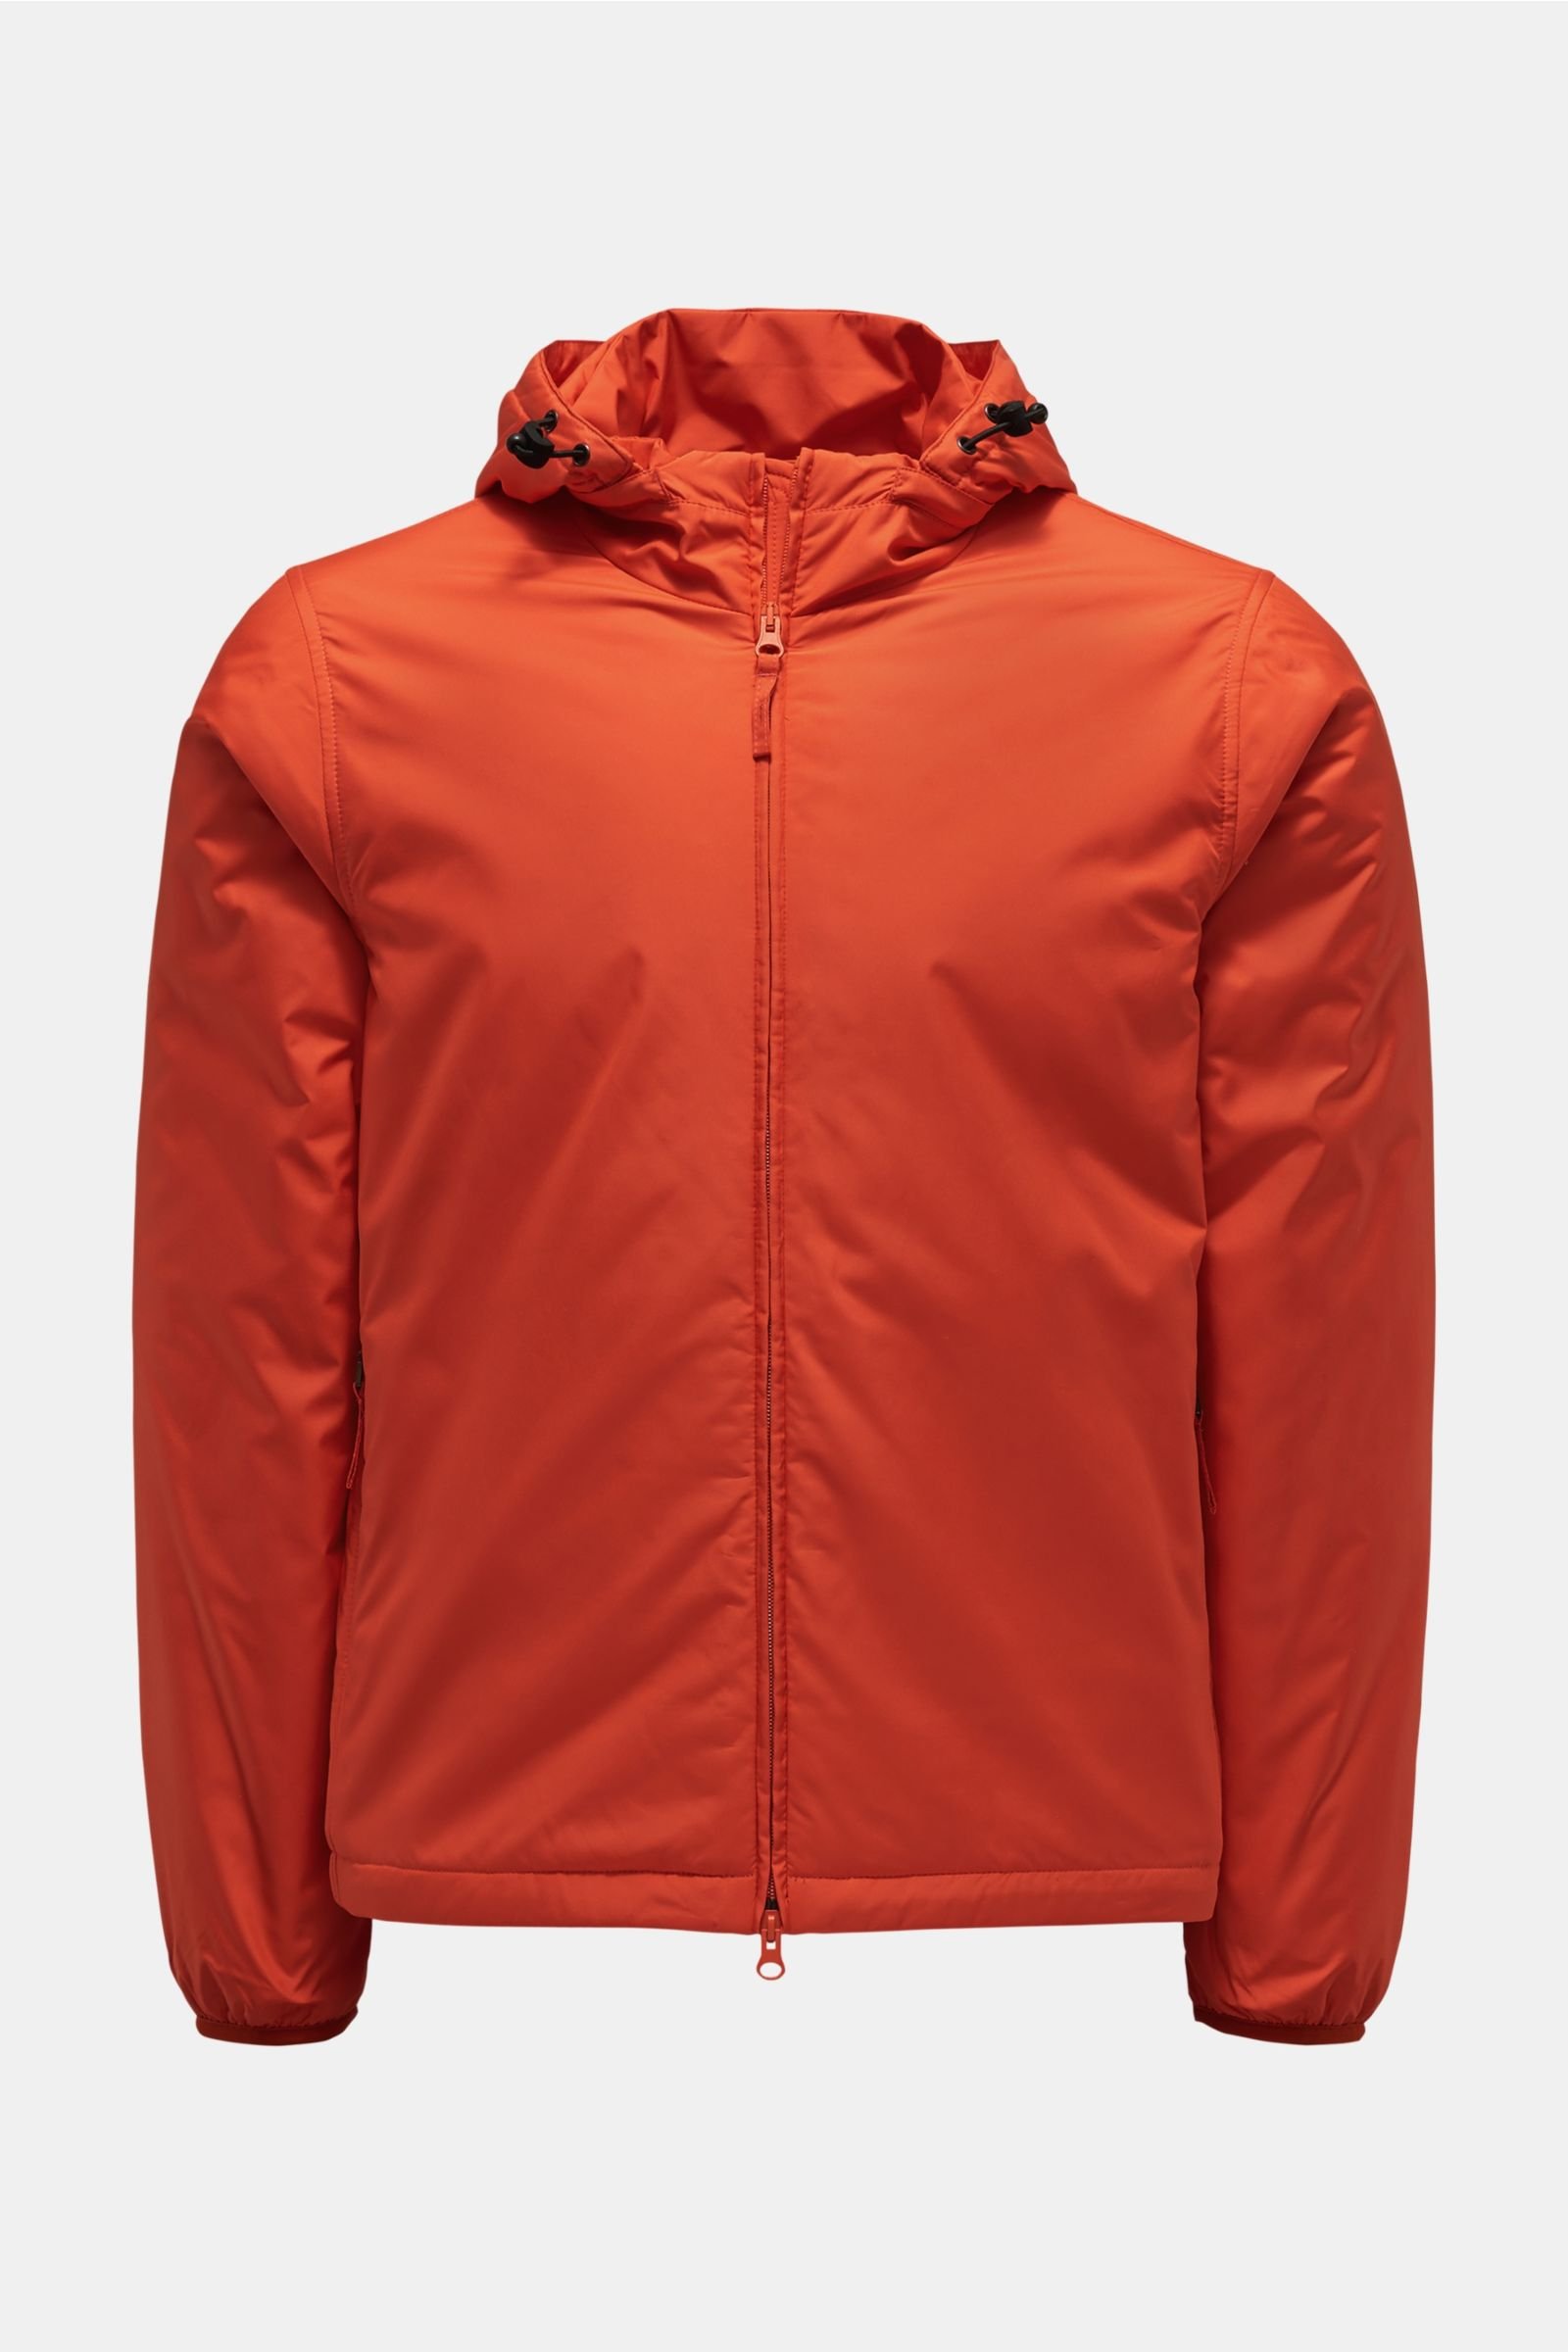 Jacket 'New Albar West' orange